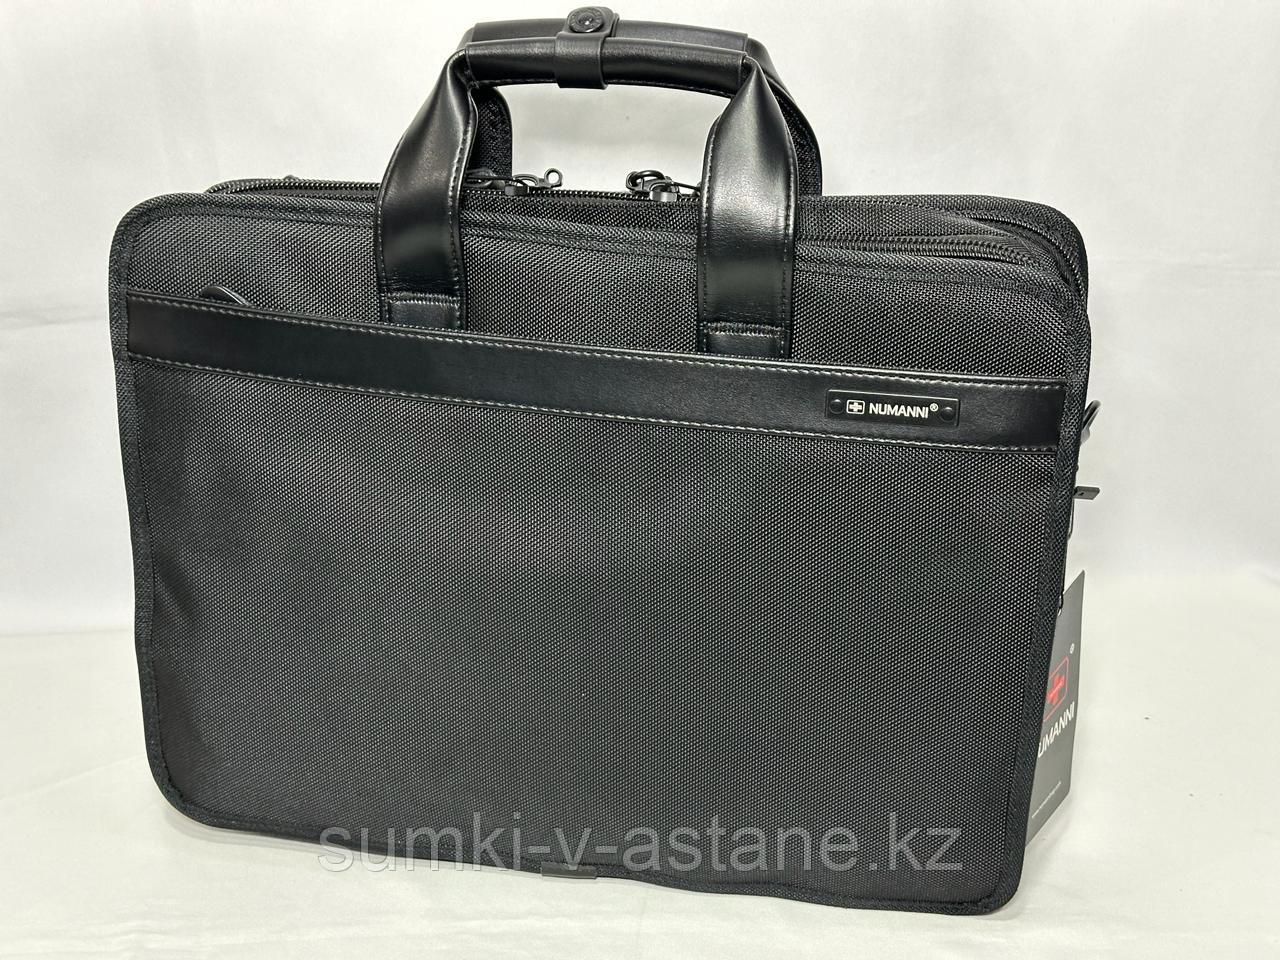 Мужская  деловая сумка- портфель из текстиля  "NUMANNI" (высота 30 см, ширина 41 см, глубина 11 см)